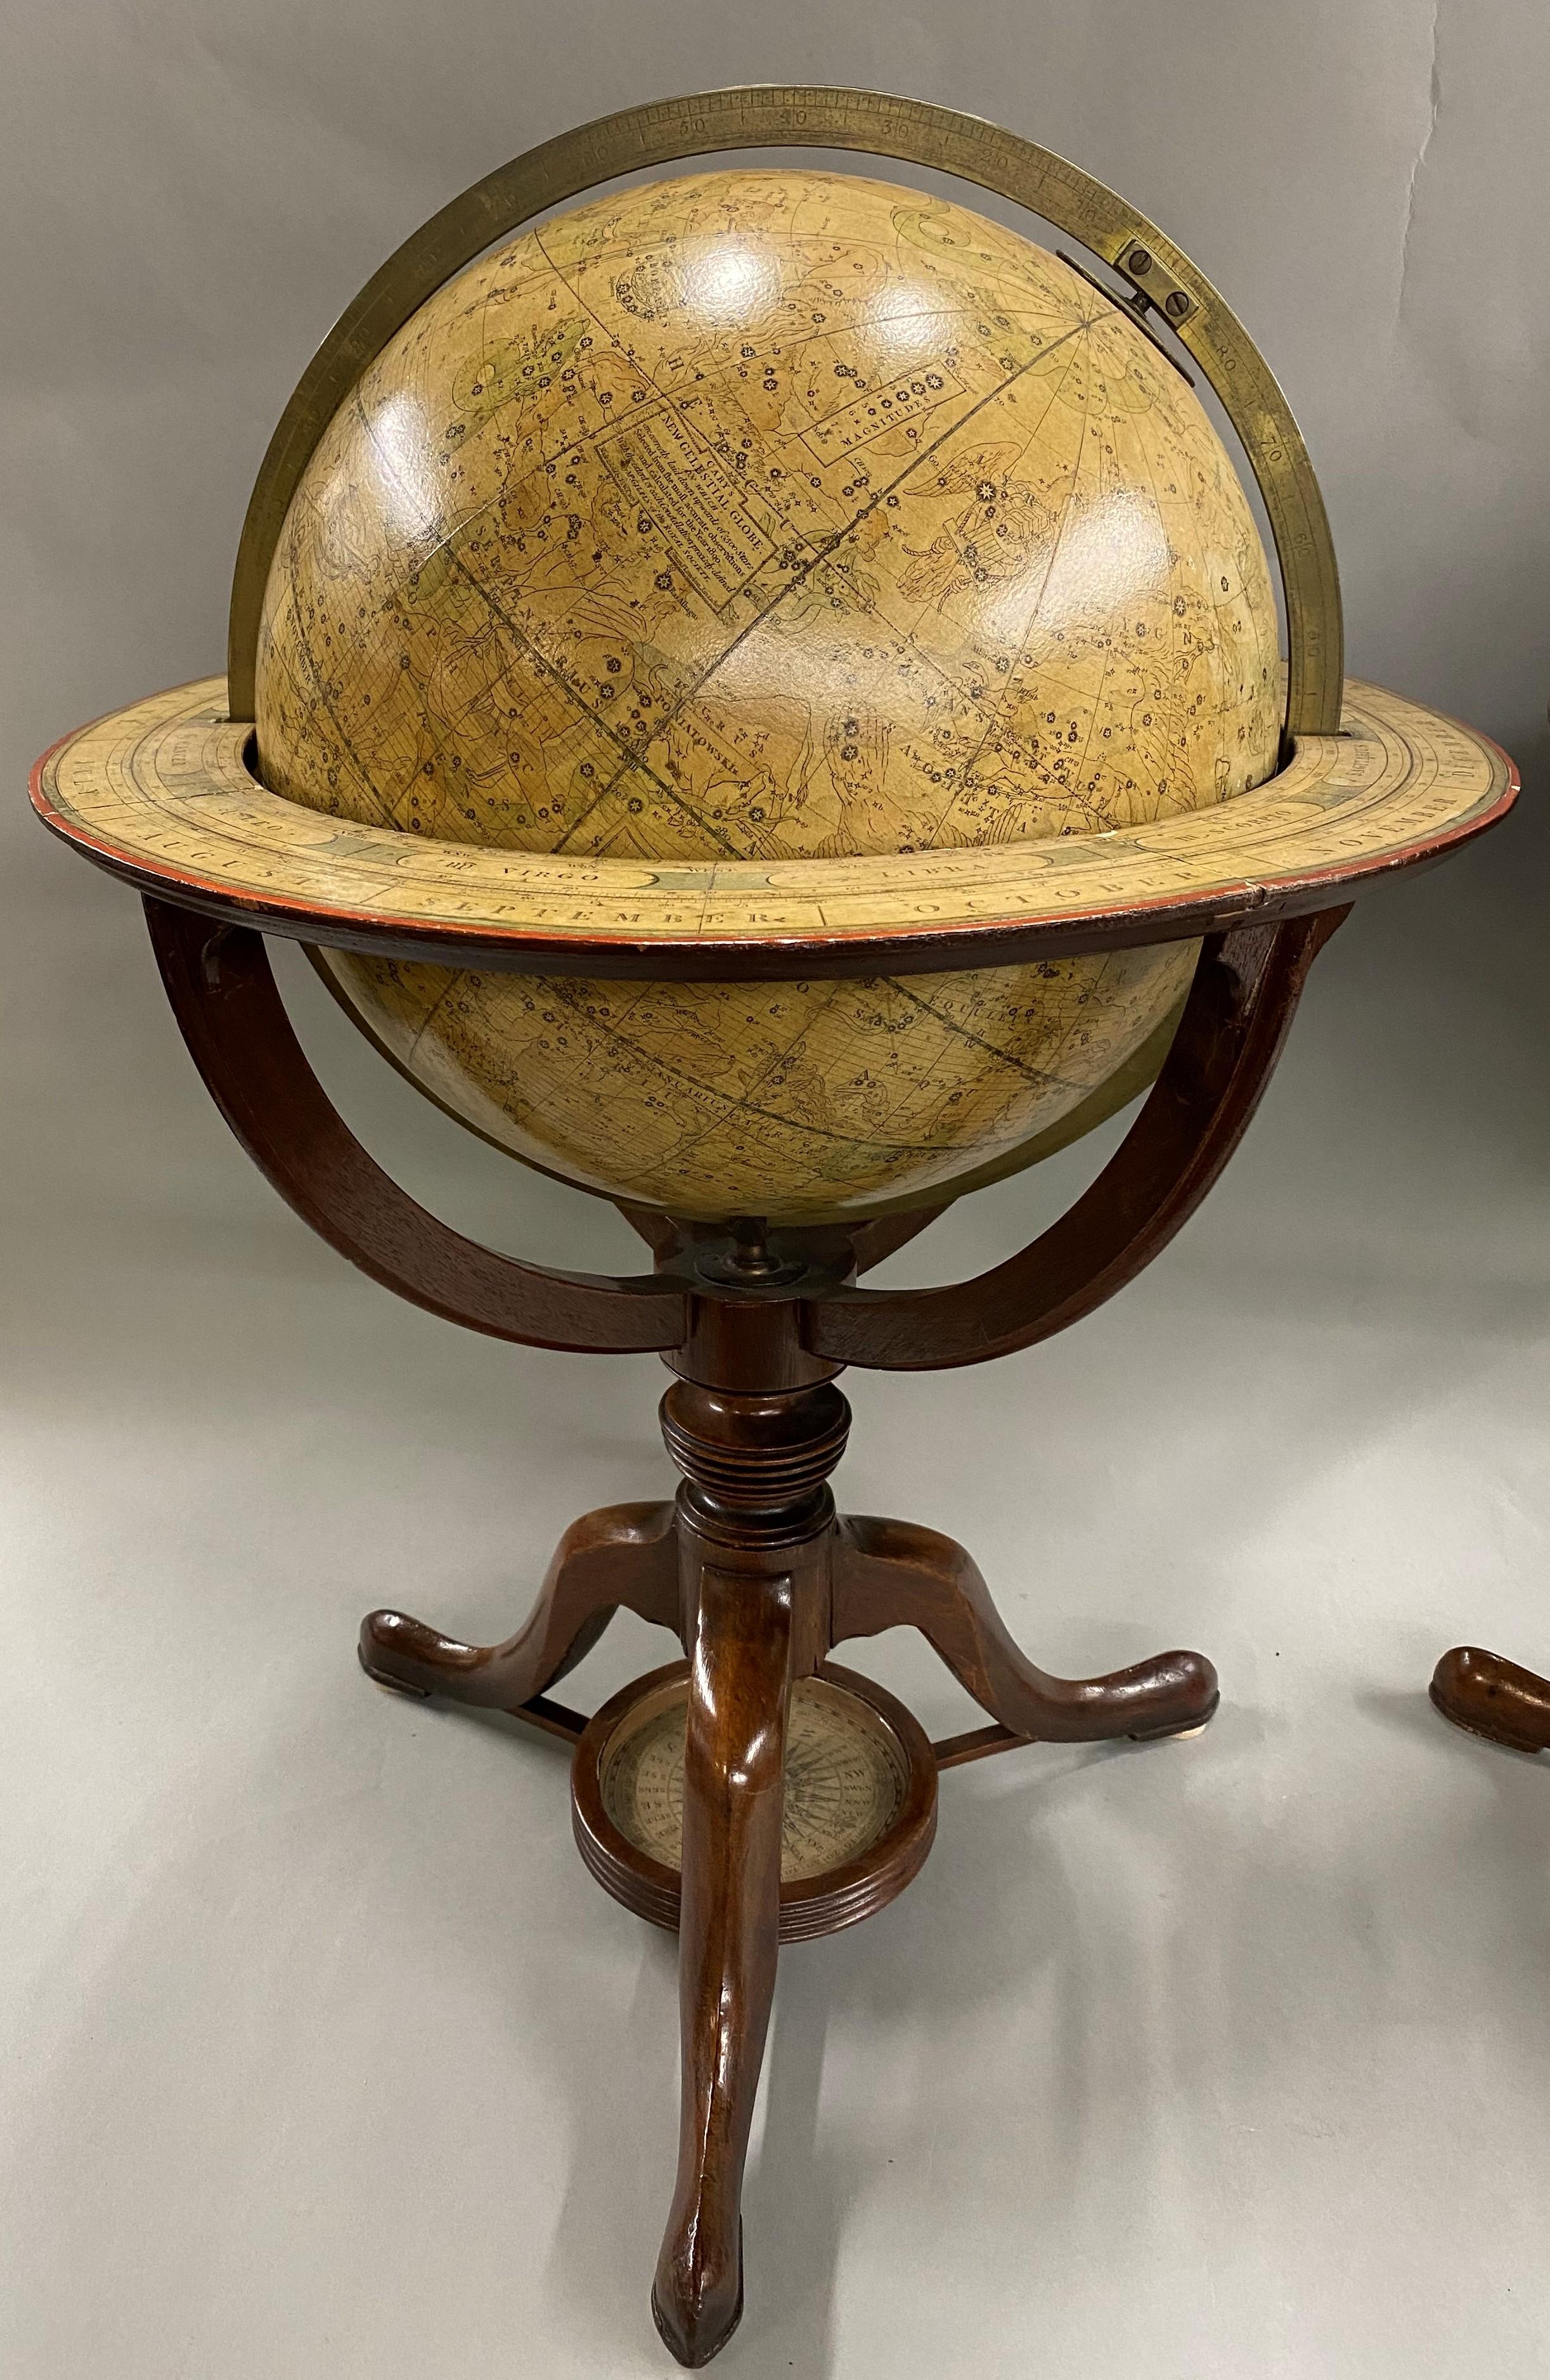 Une belle paire de globes de table sur pied, le globe céleste de gauche, coloré, avec un cartouche indiquant 